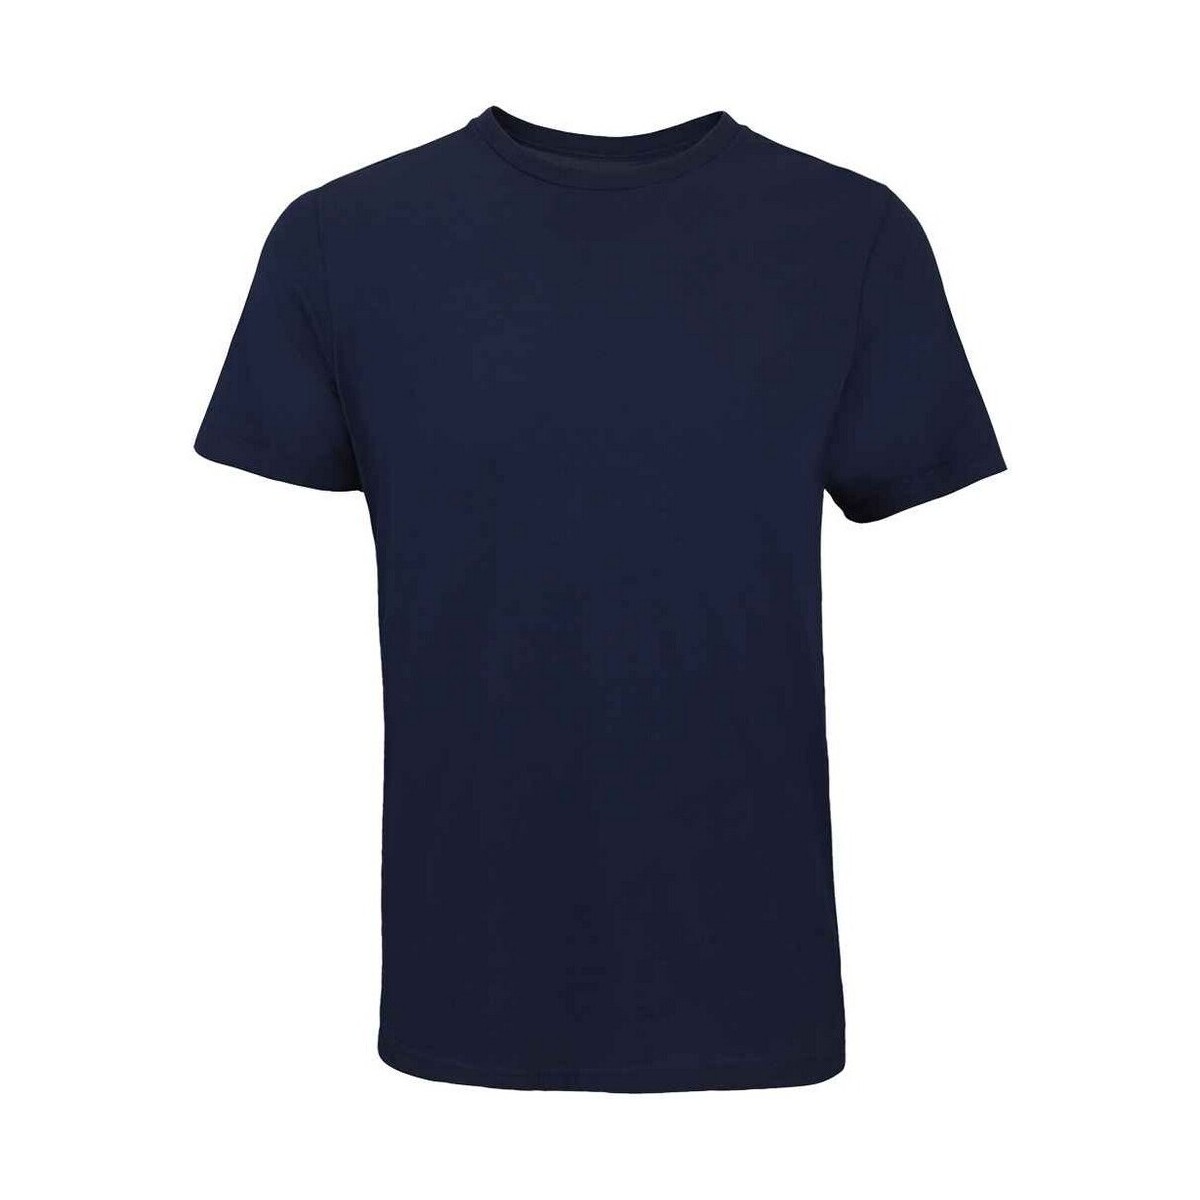 textil Camisetas manga larga Sols Tuner Azul